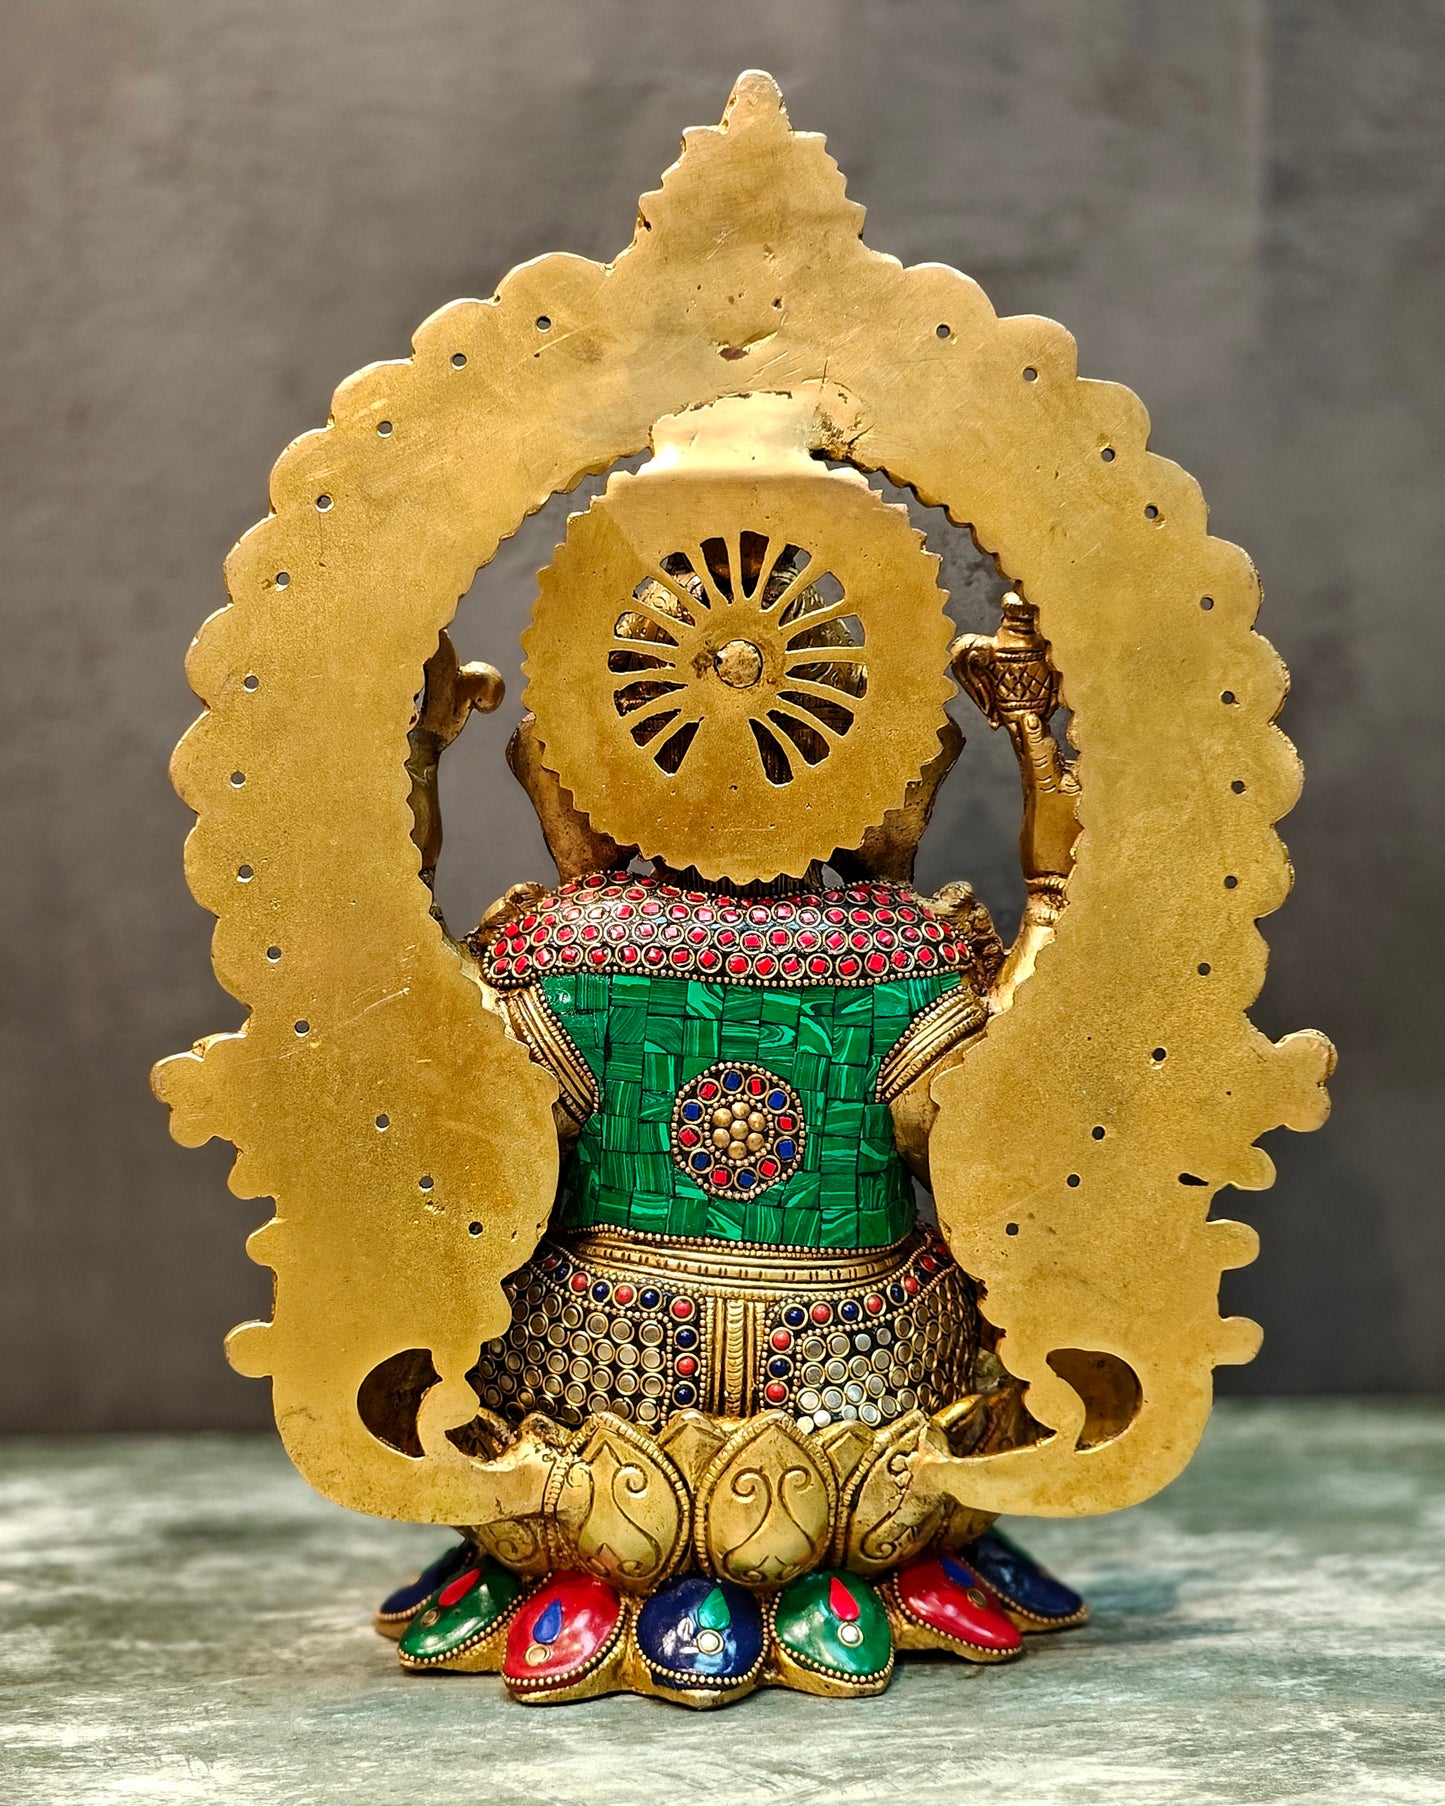 Lord Ganesha Idol with Stonework 15 inch